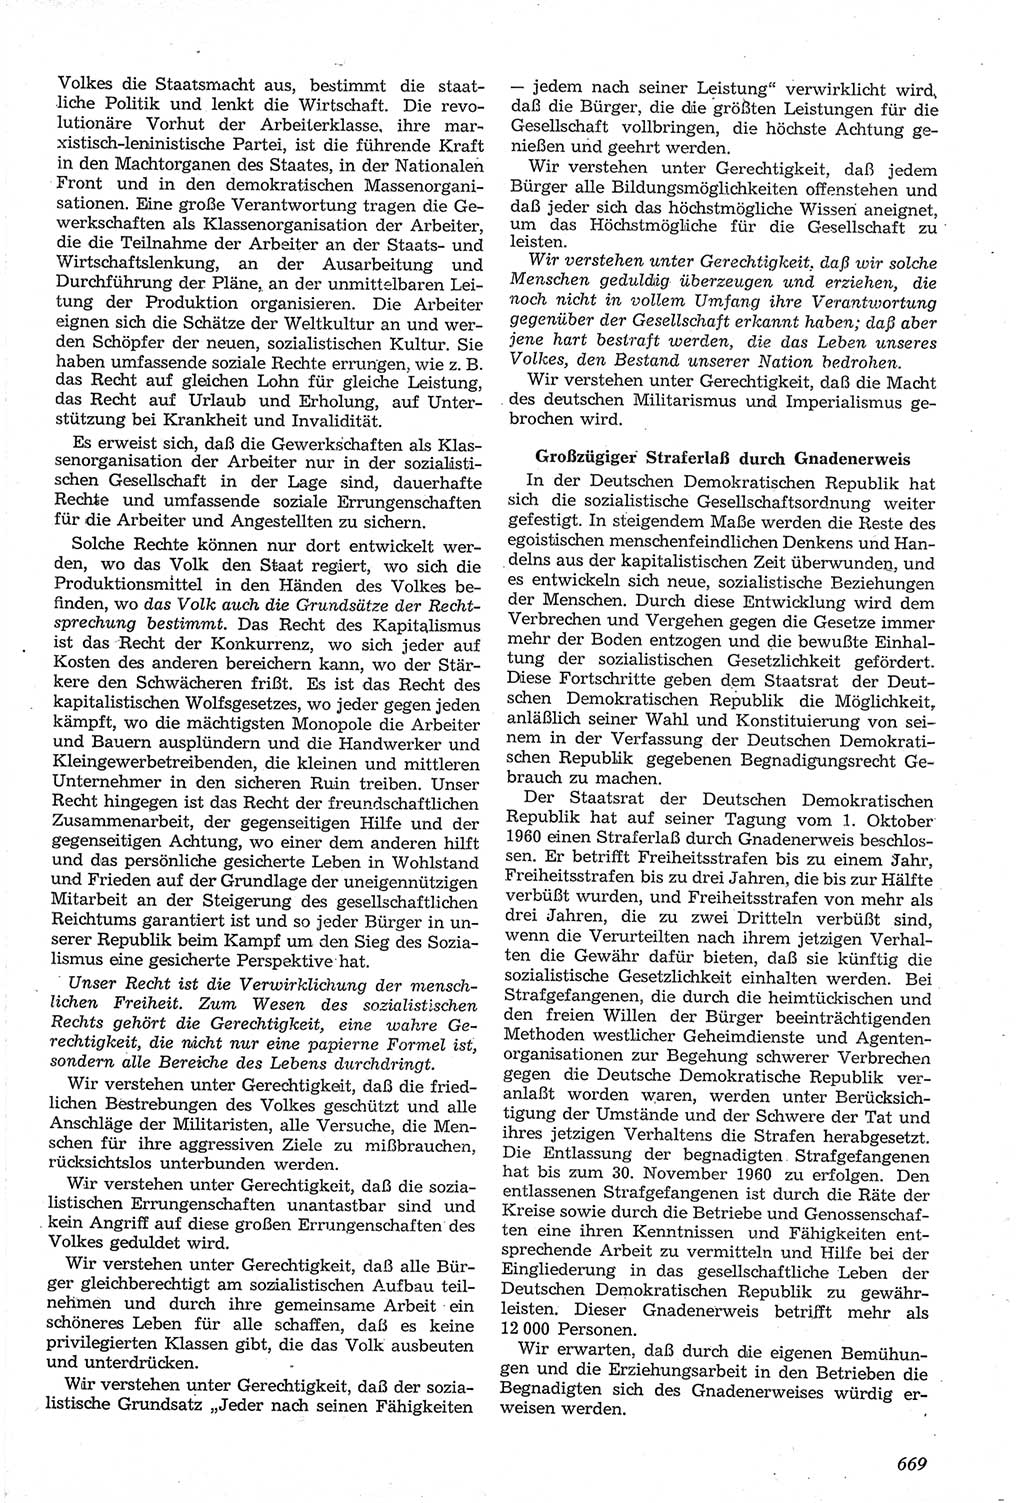 Neue Justiz (NJ), Zeitschrift für Recht und Rechtswissenschaft [Deutsche Demokratische Republik (DDR)], 14. Jahrgang 1960, Seite 669 (NJ DDR 1960, S. 669)